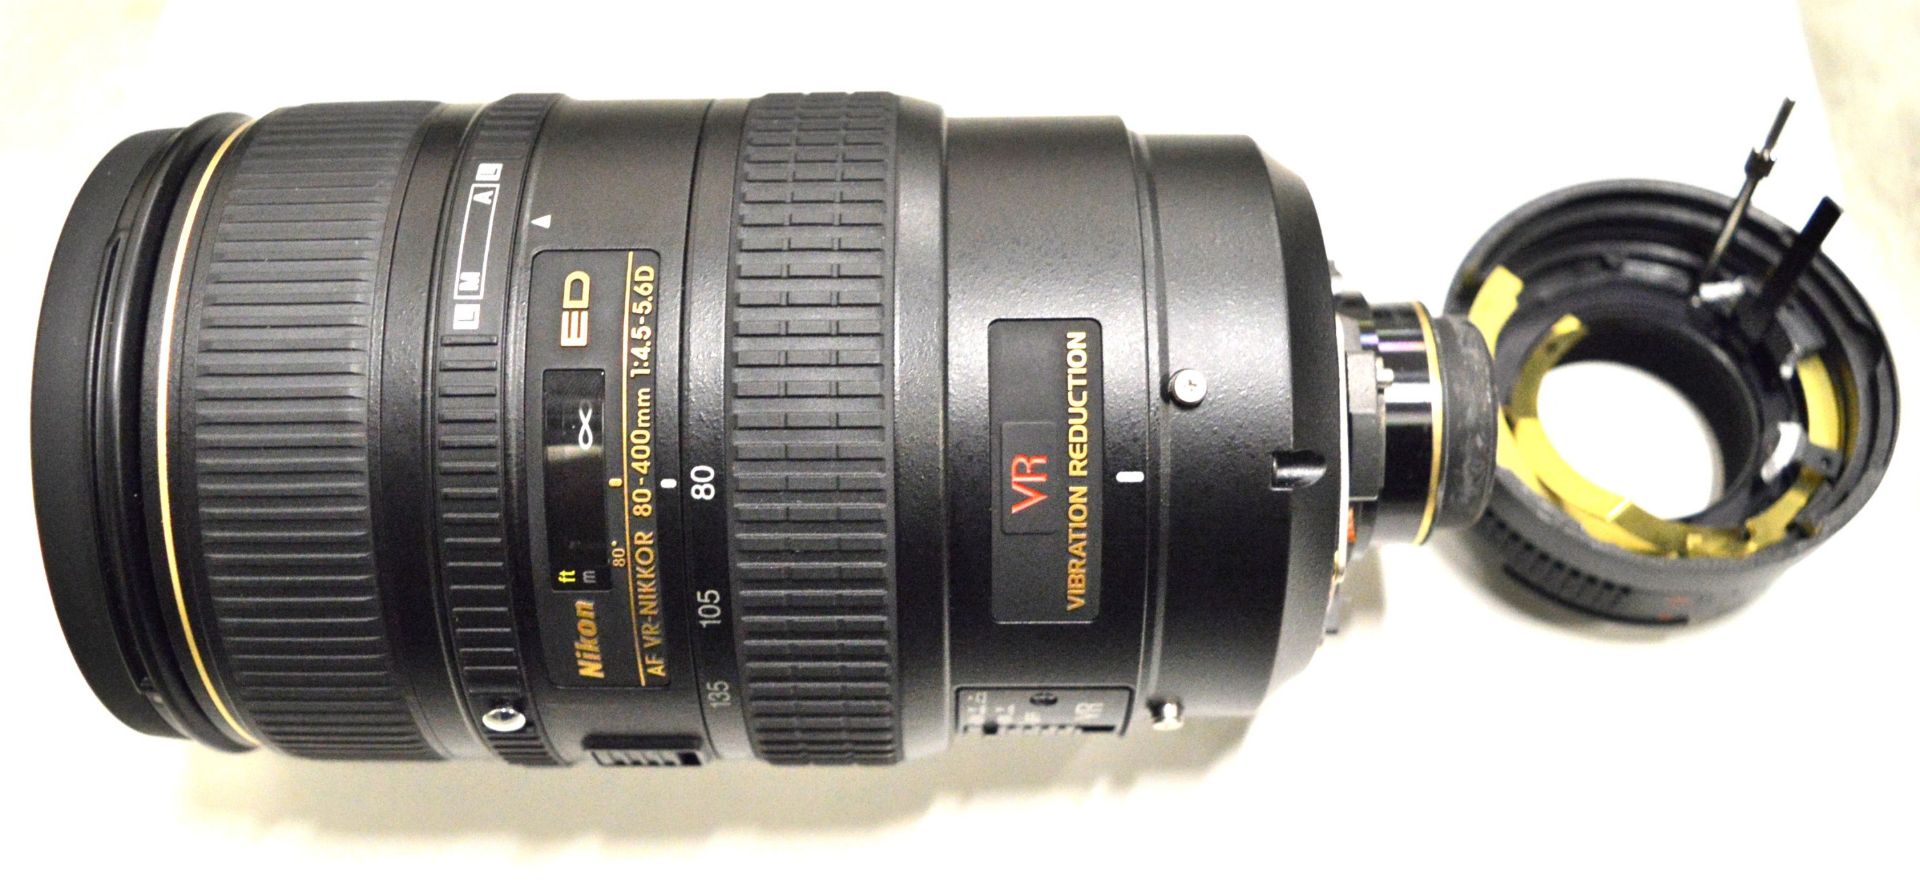 Nikon Lens AF-Nikkor 80-400mm 1:4.5-5.6D - Serial No. 412575. - Image 4 of 6